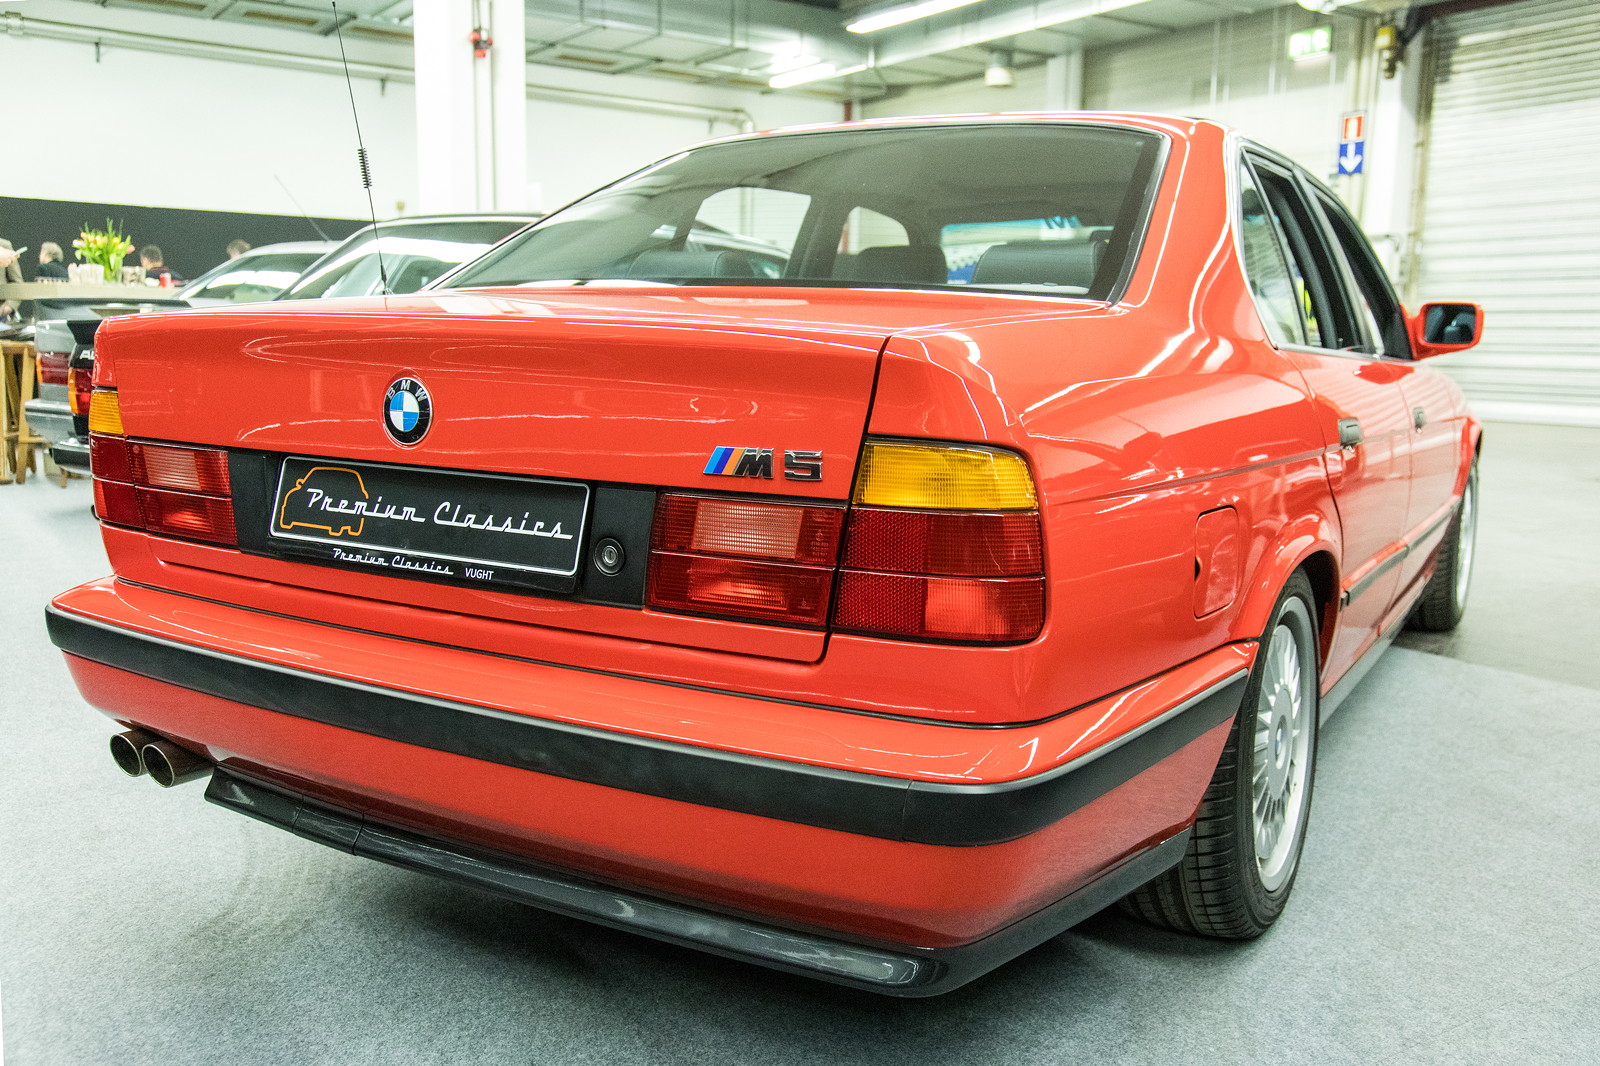 Foto: BMW M5 3.6 (E34), in Misanorot, sehr rar in dieser Farbe und Zustand  (vergrößert)